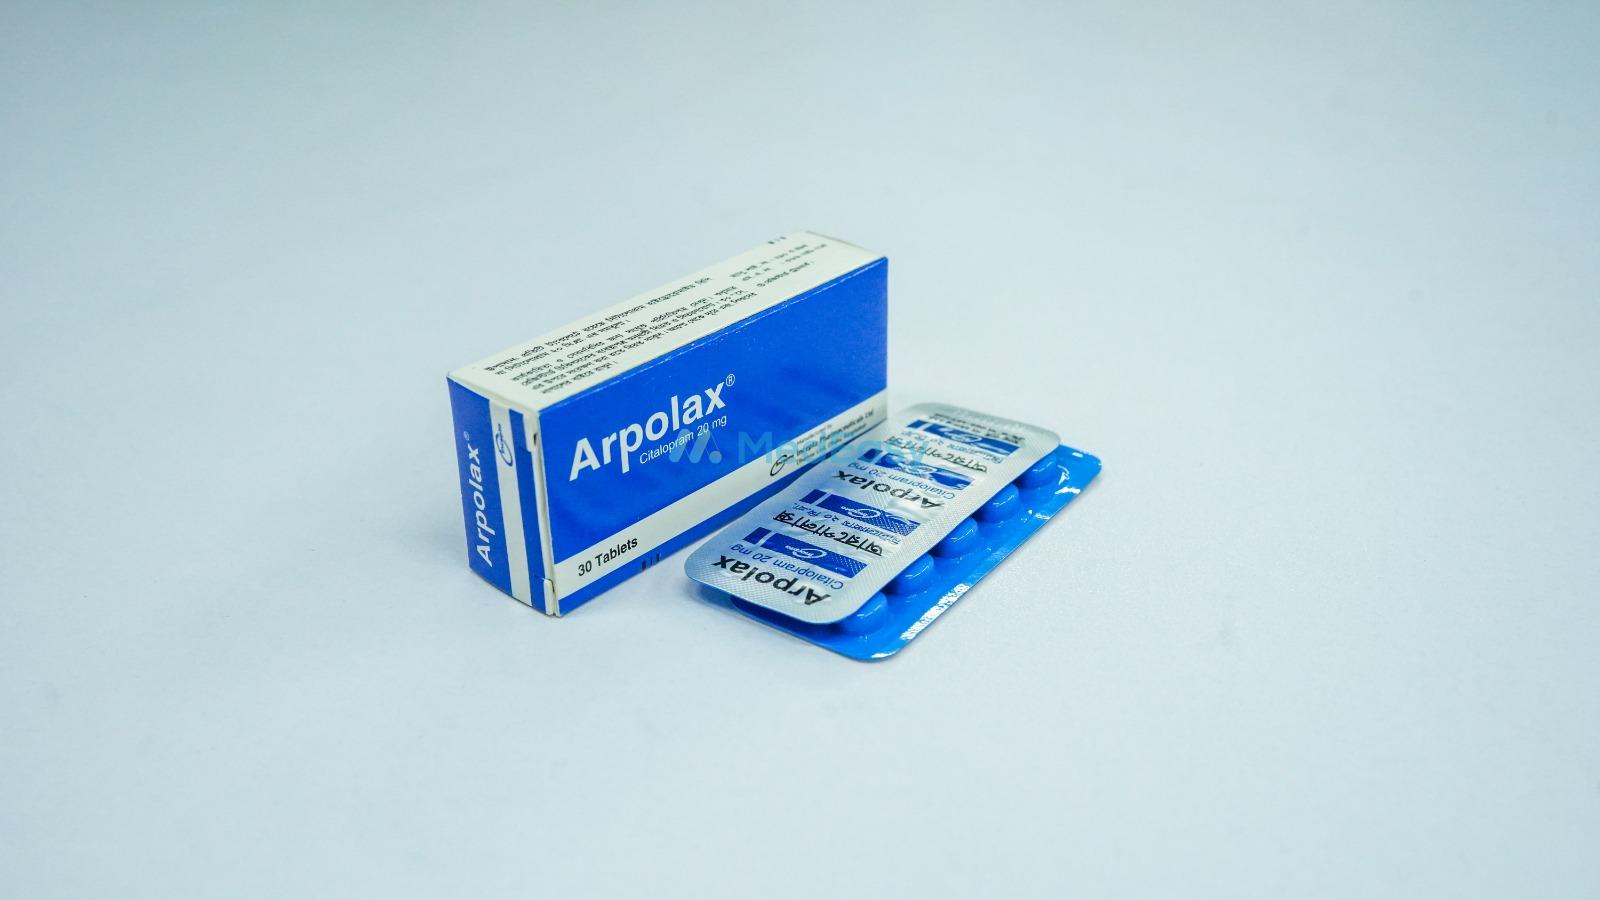 Arpolax